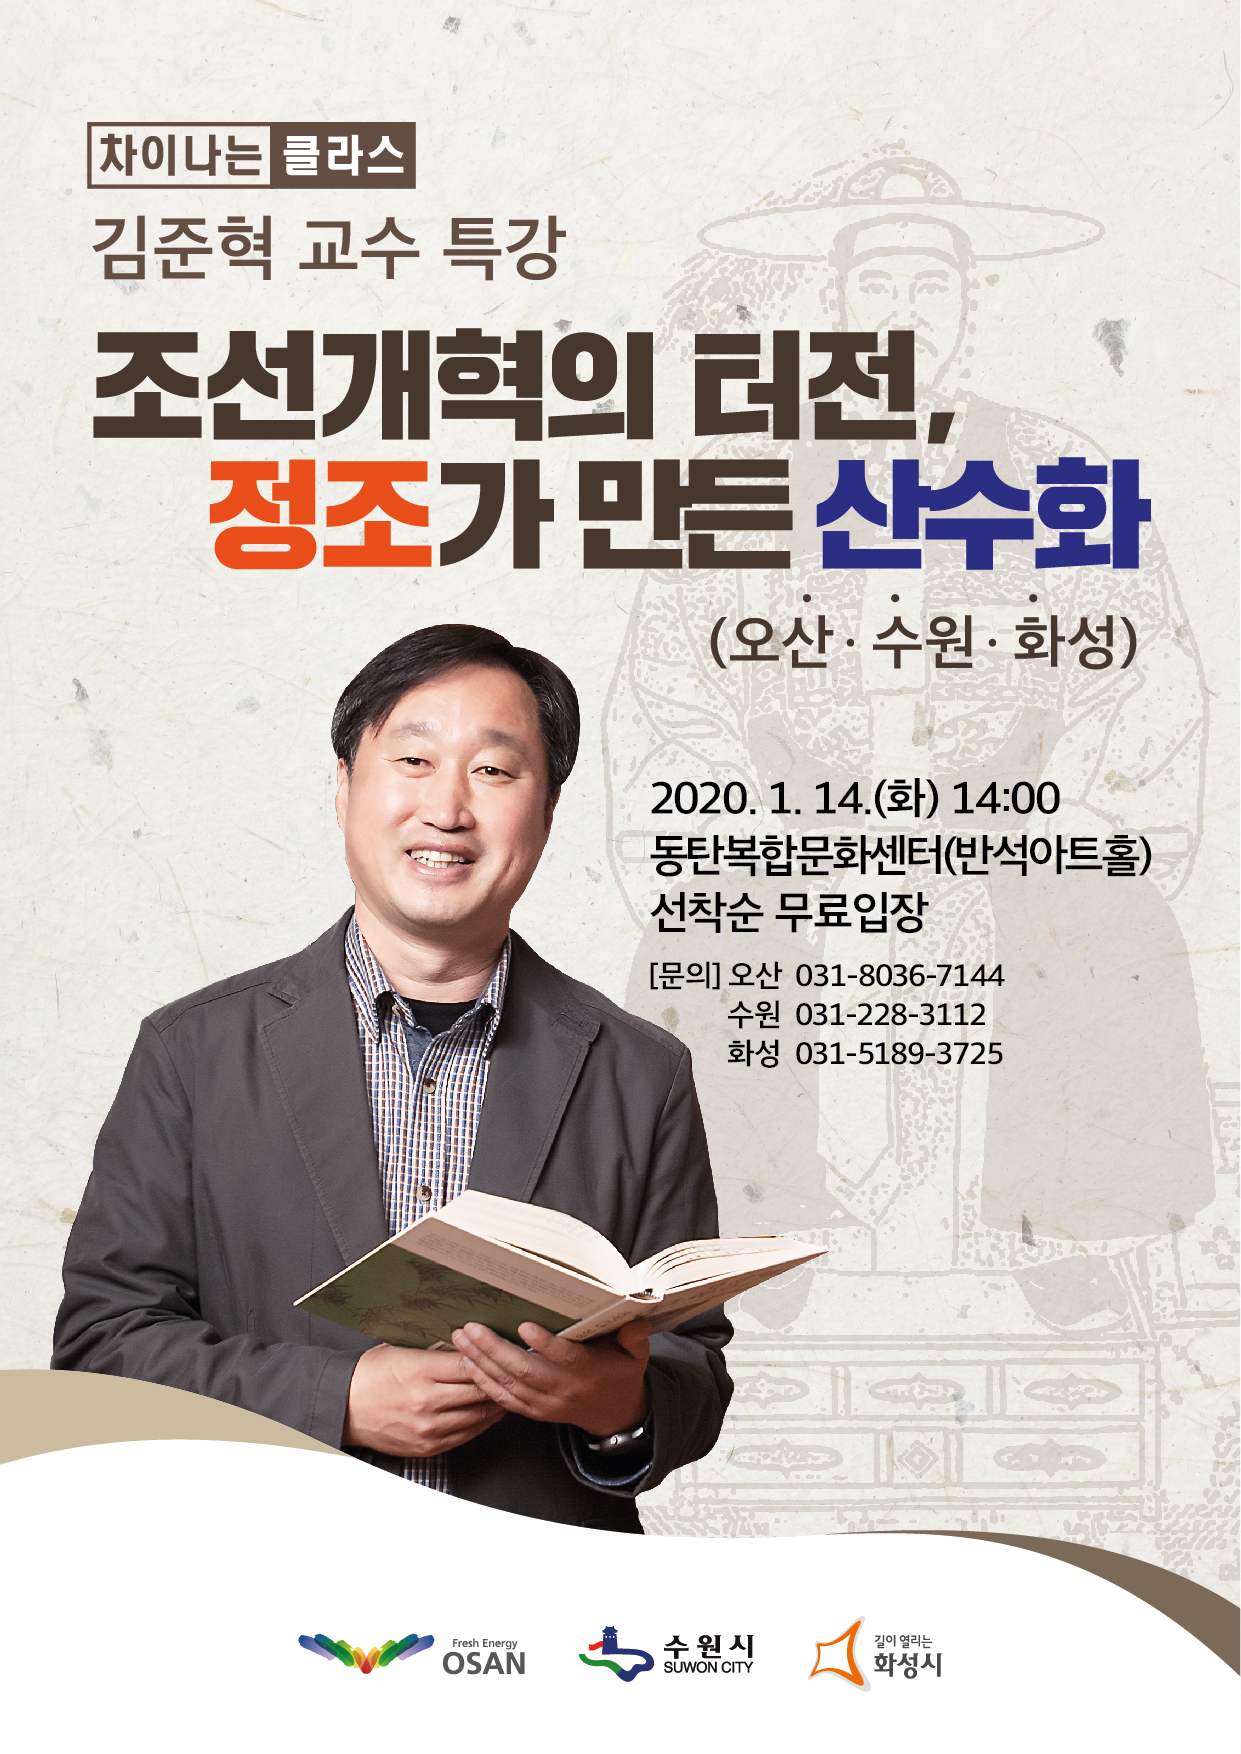 김준혁 교수 특강 - 조선개혁의 터전, 정조가 만든 산수화이미지 1